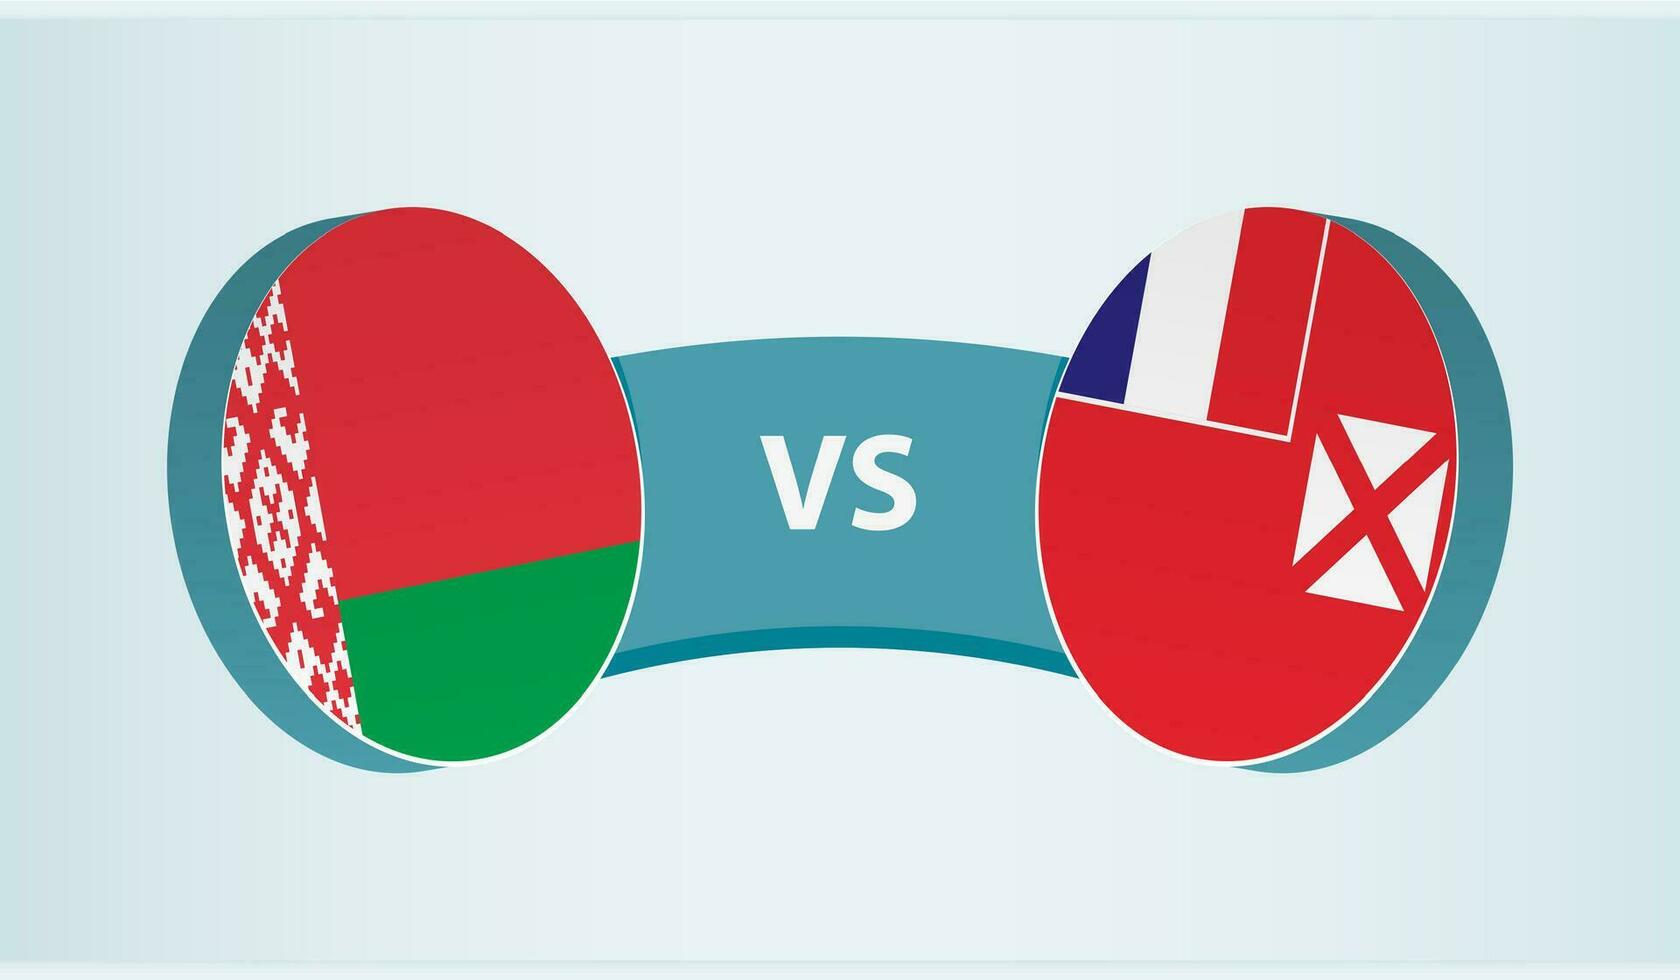 Vitryssland mot wallis och futuna, team sporter konkurrens begrepp. vektor